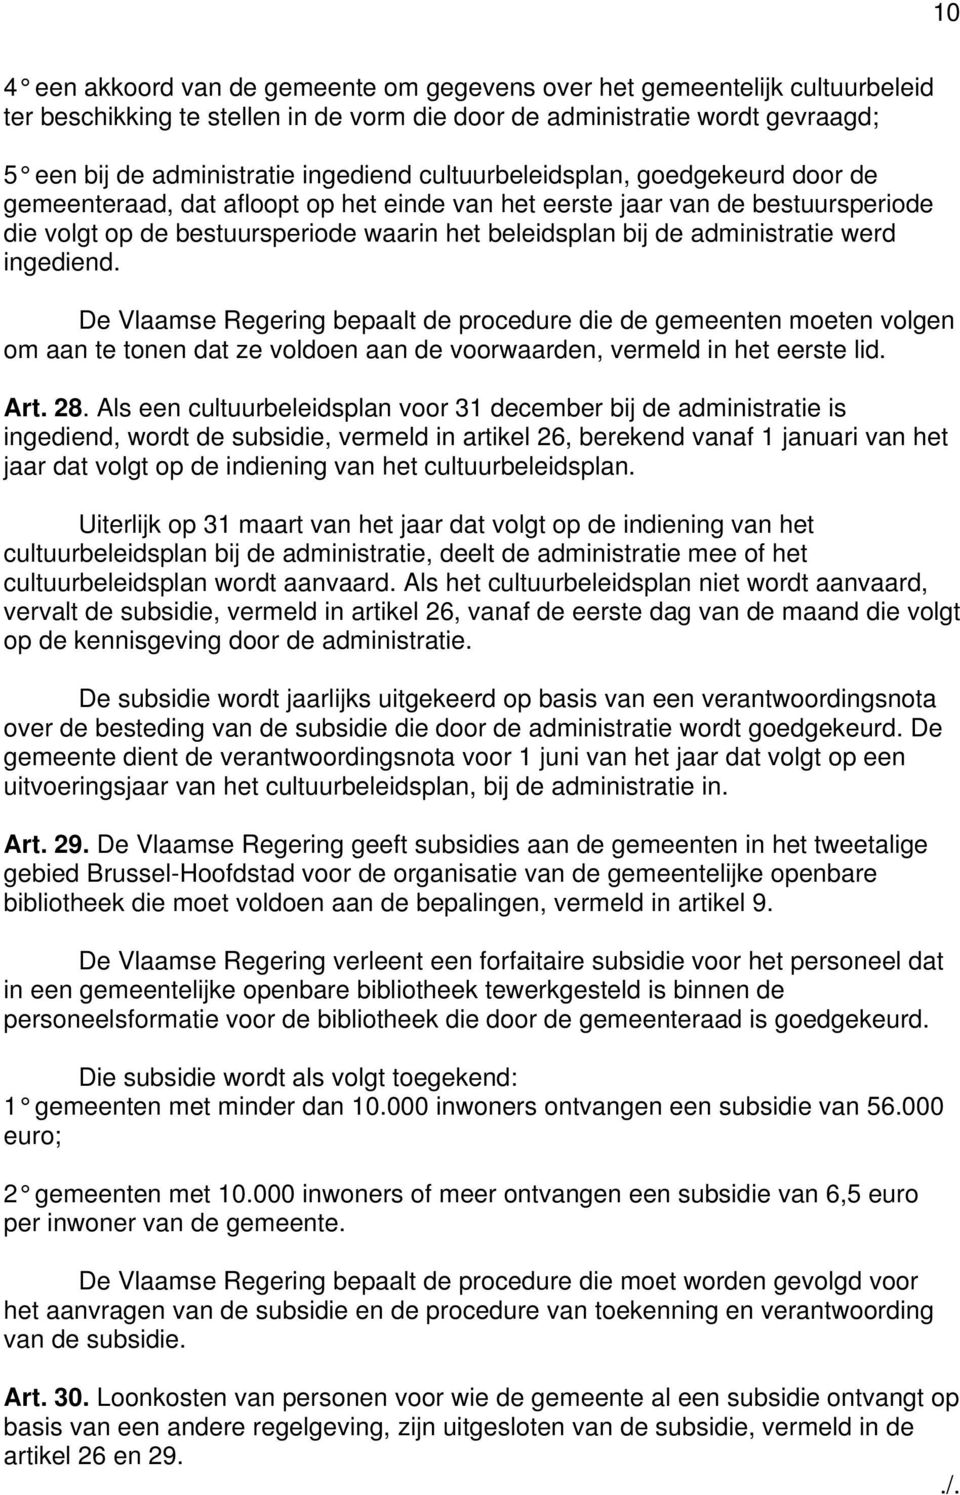 werd ingediend. De Vlaamse Regering bepaalt de procedure die de gemeenten moeten volgen om aan te tonen dat ze voldoen aan de voorwaarden, vermeld in het eerste lid. rt. 28.